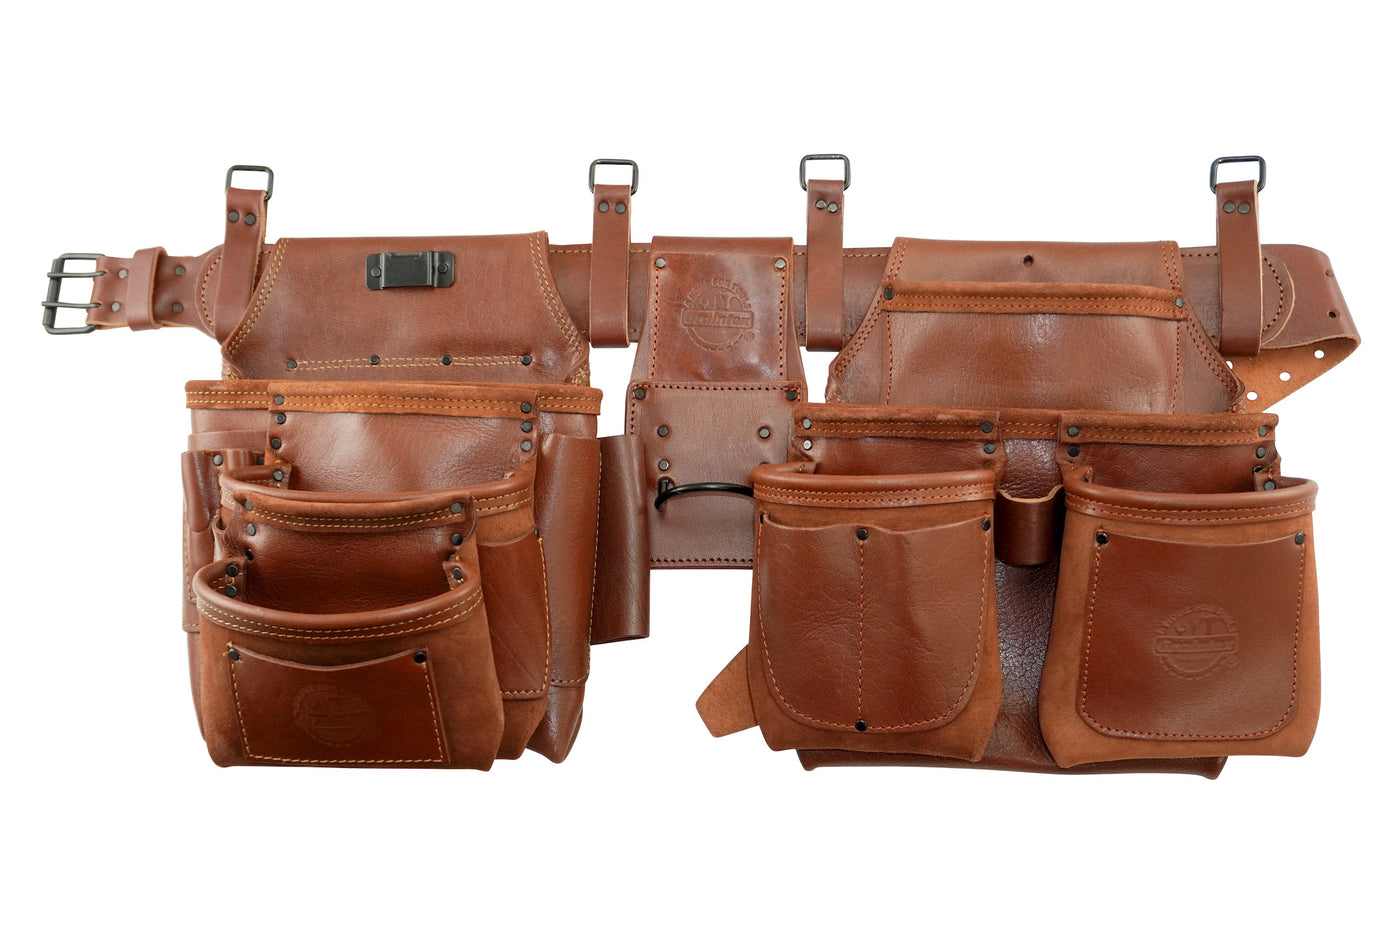 AD2747 :: 4 Piece 18 Pocket Framer's Tool Belt Combo Ambassador Series Chestnut Brown Color Grain Leather